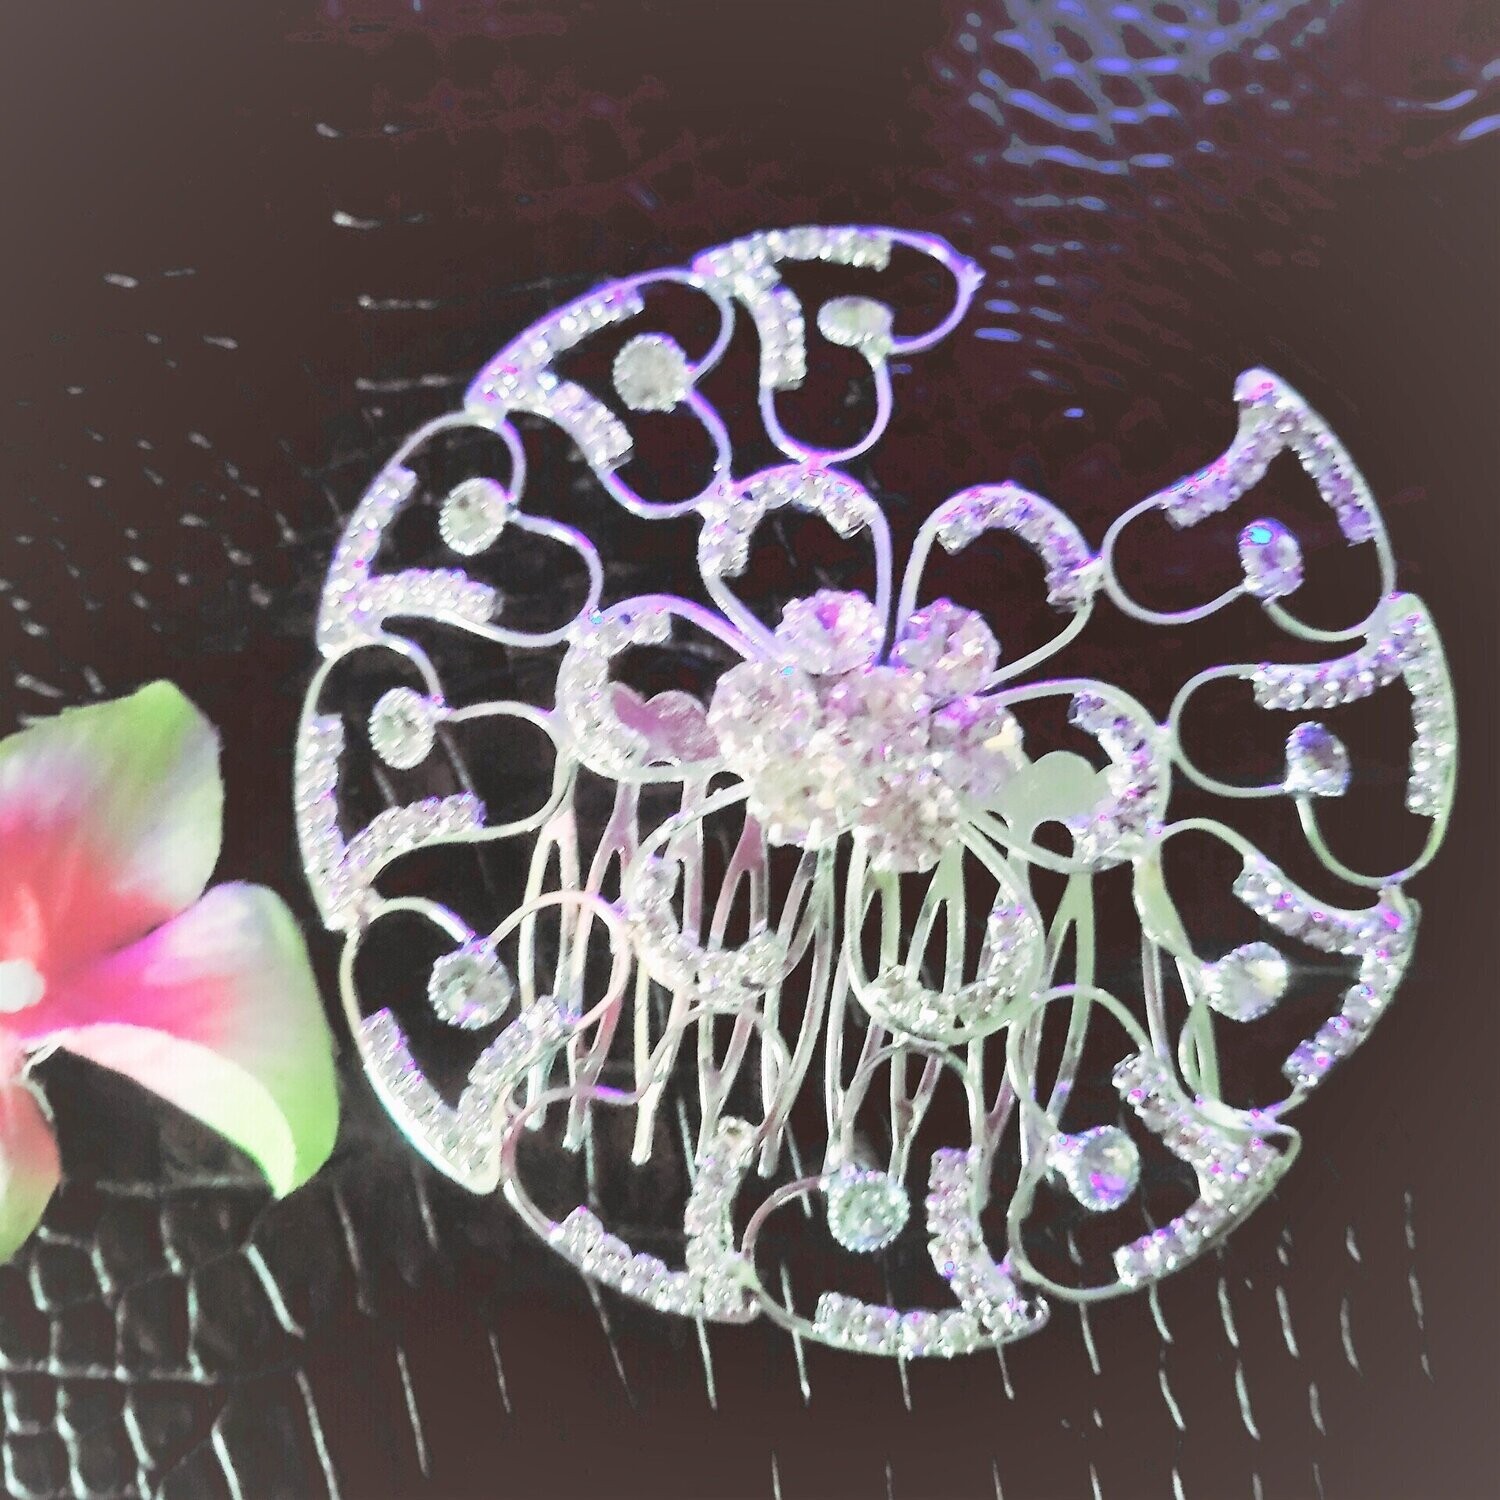 Big Circular designed Rhinestone Crystal Alloy Wedding Decoration Accessory Bridal Hair Combs